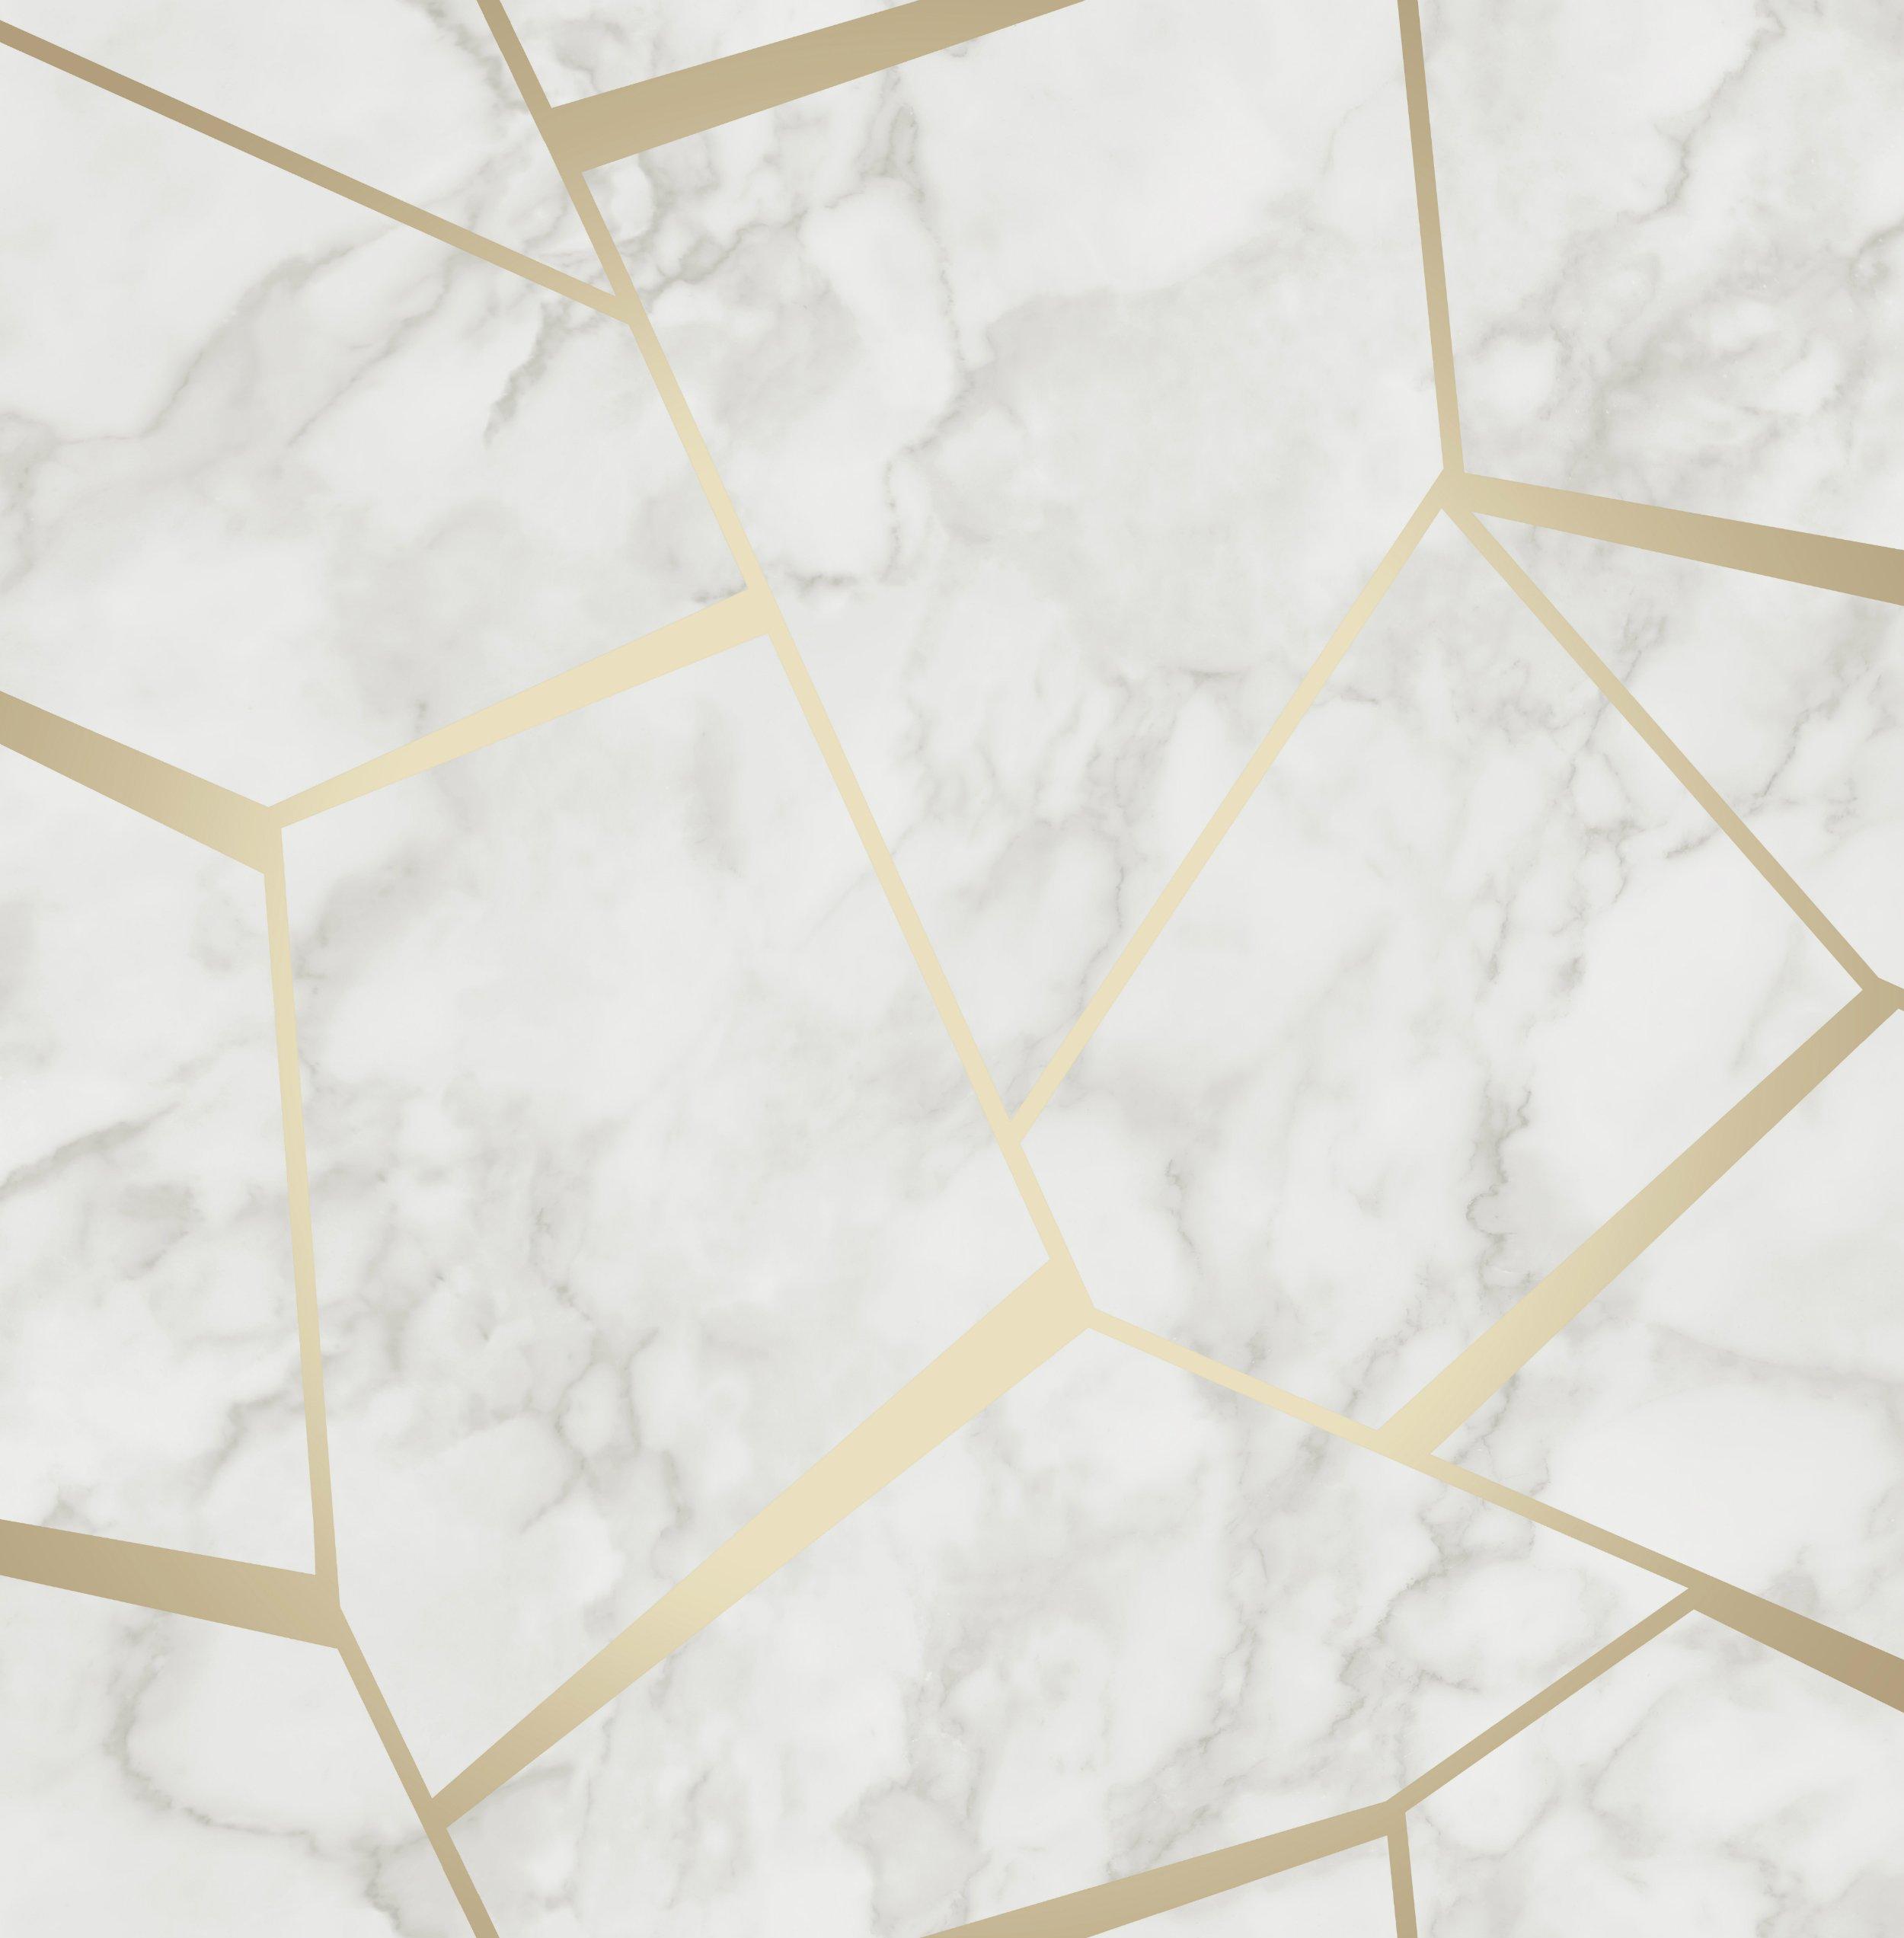 2500 x 2545 · jpeg - Fine Decor Fractal Marble Wallpaper - FD42265 -Gold